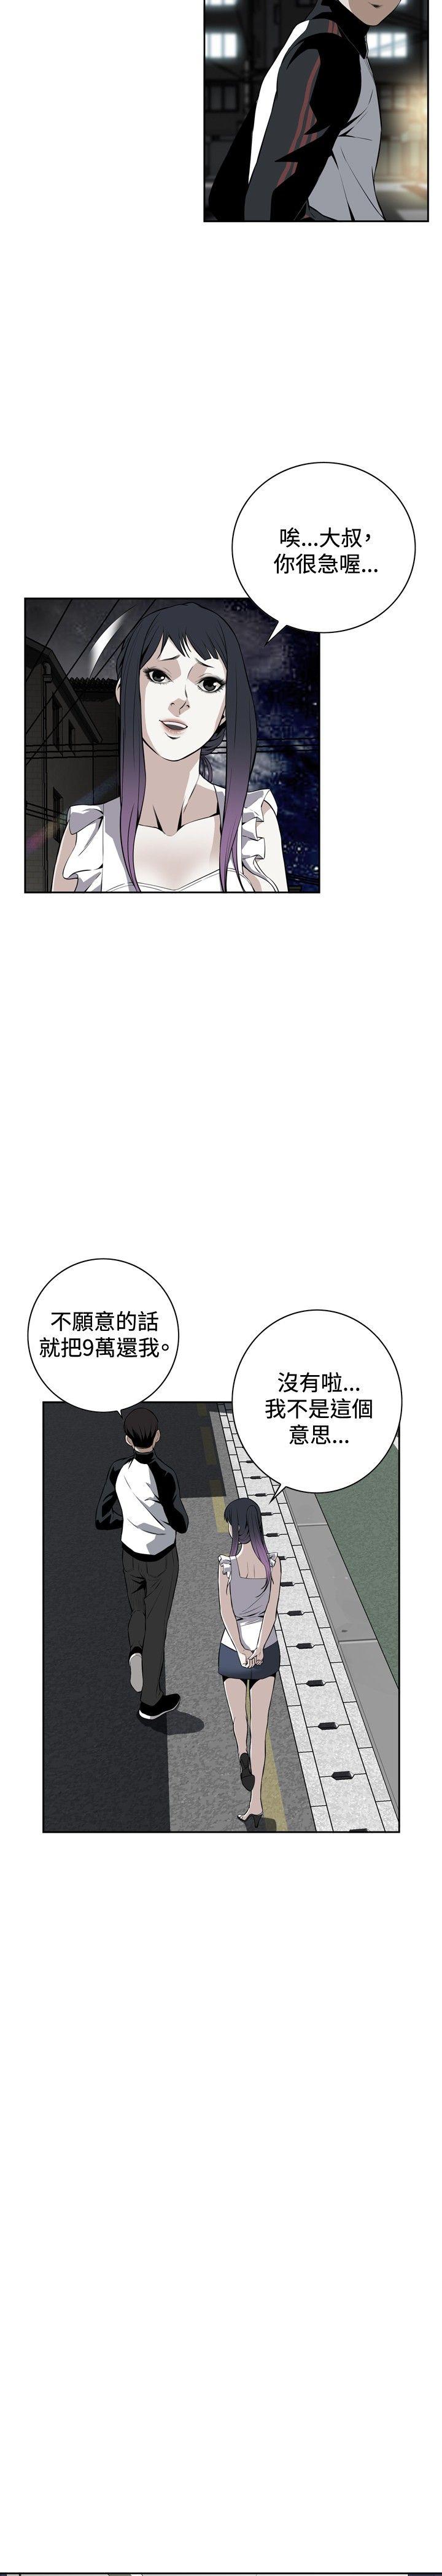 韩国污漫画 偷窺 第15话 26